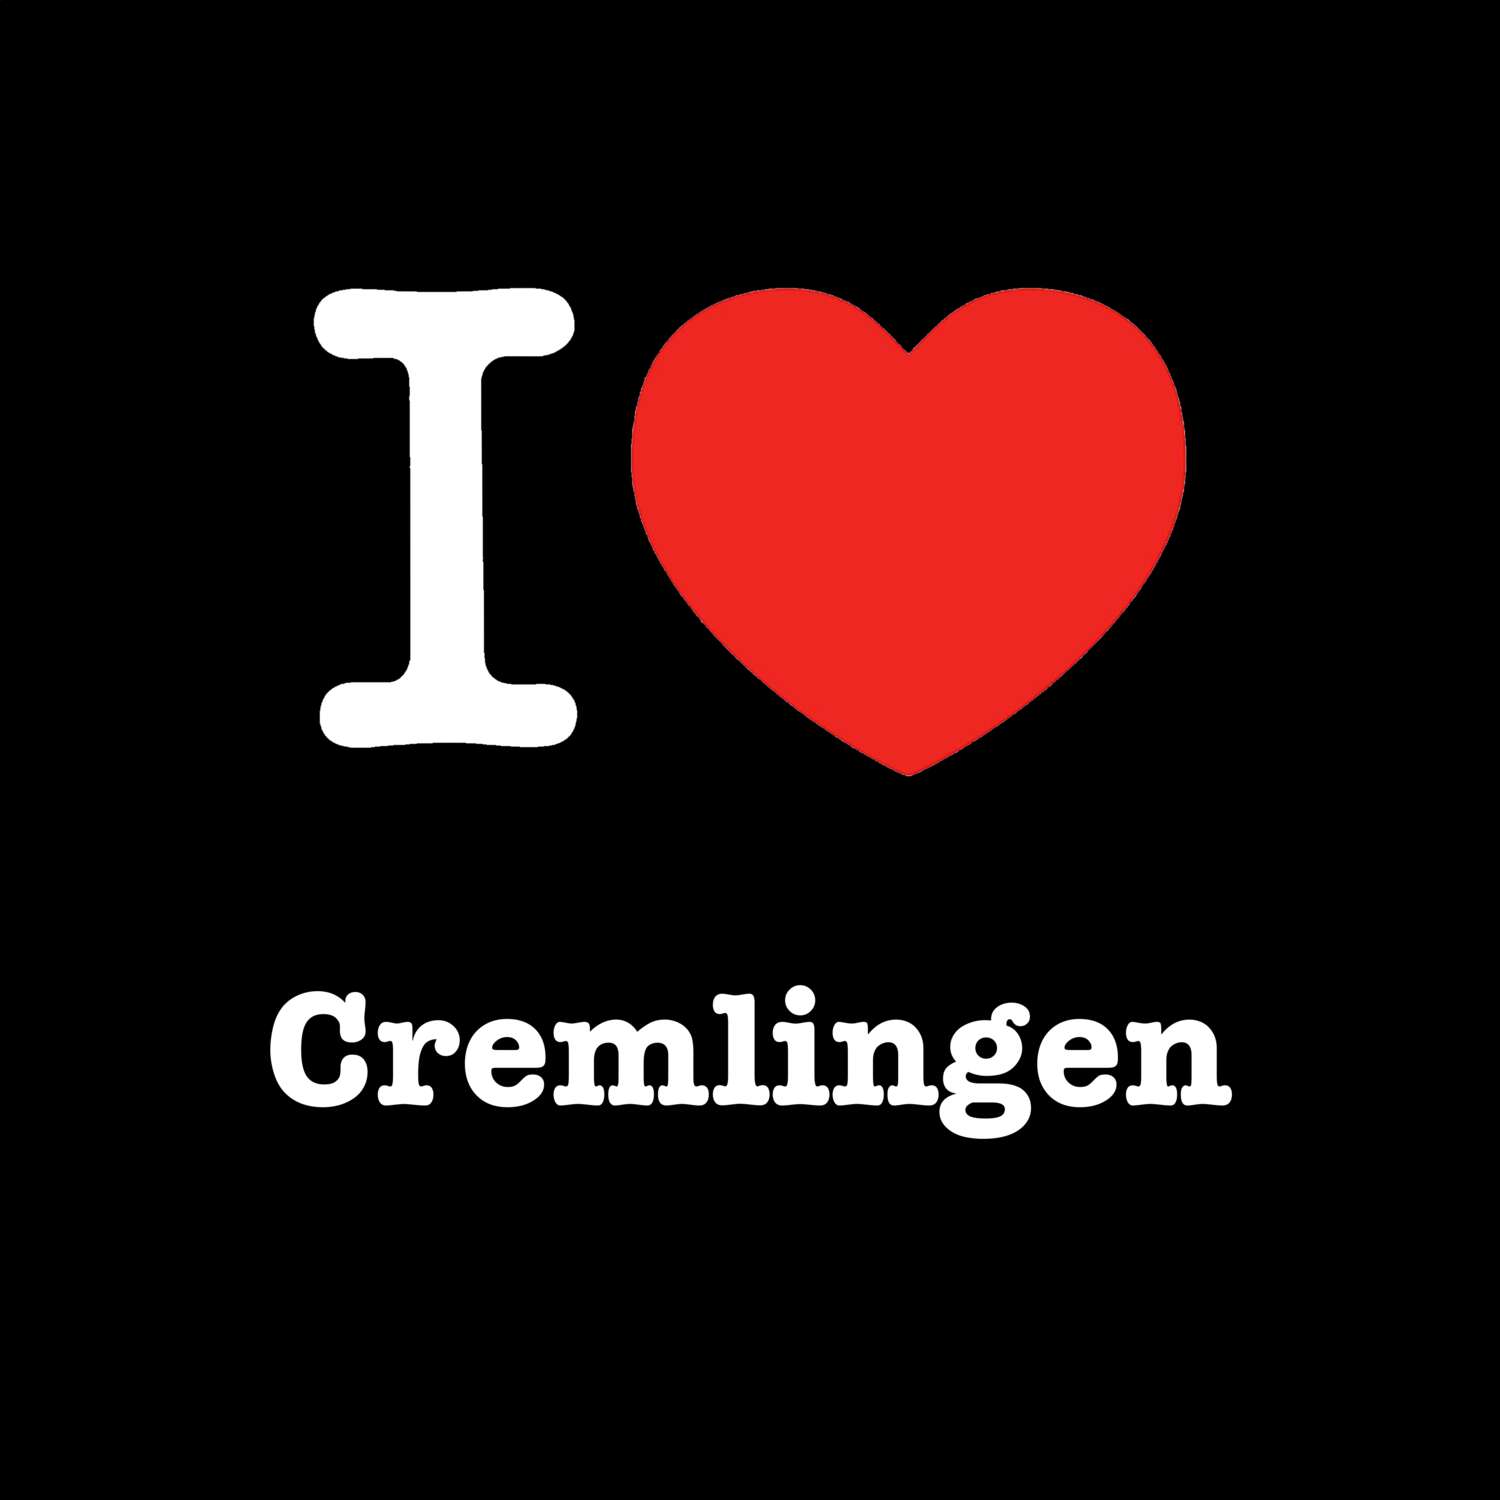 Cremlingen T-Shirt »I love«